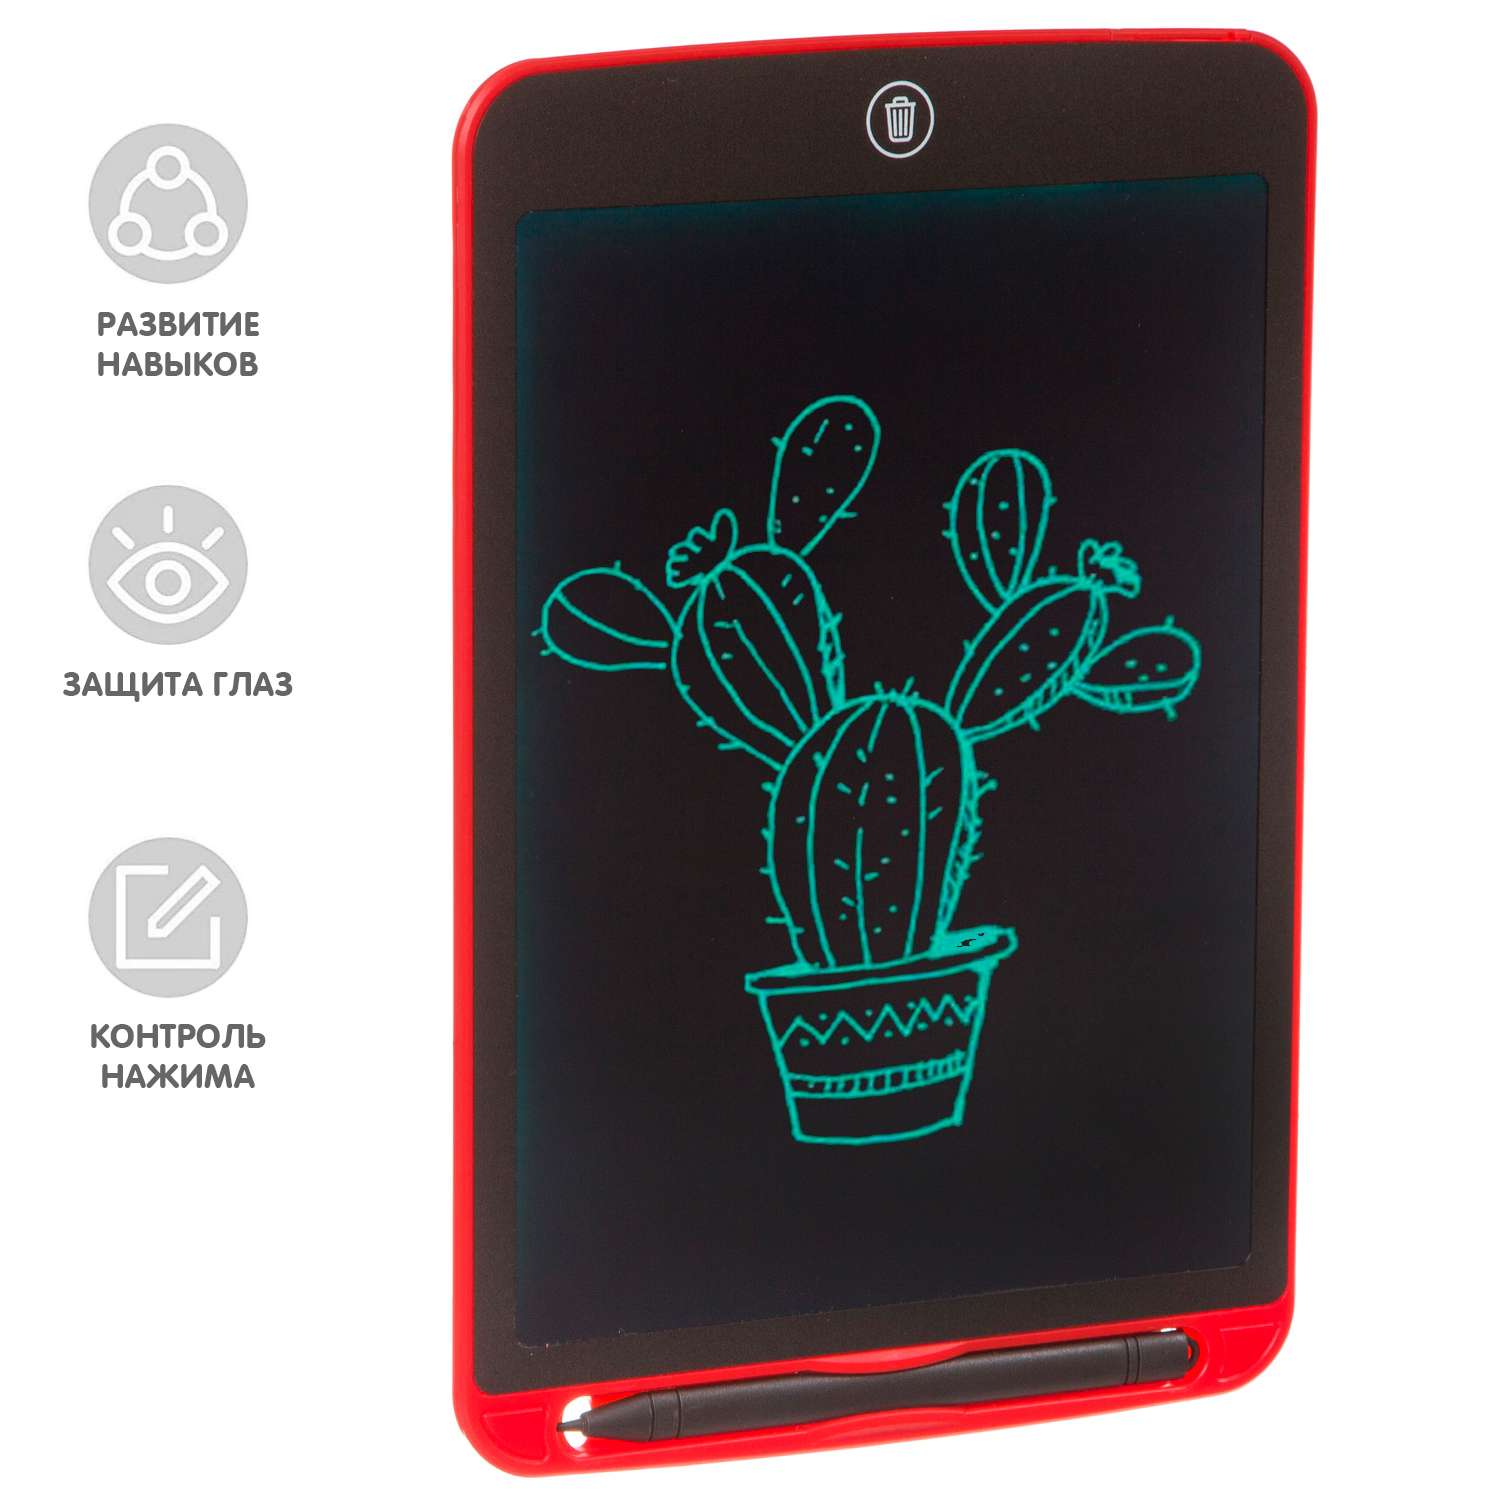 Развивающий планшет BONDIBON монохромный жидкокристаллический экран 10 дюймов красного цвета - фото 2